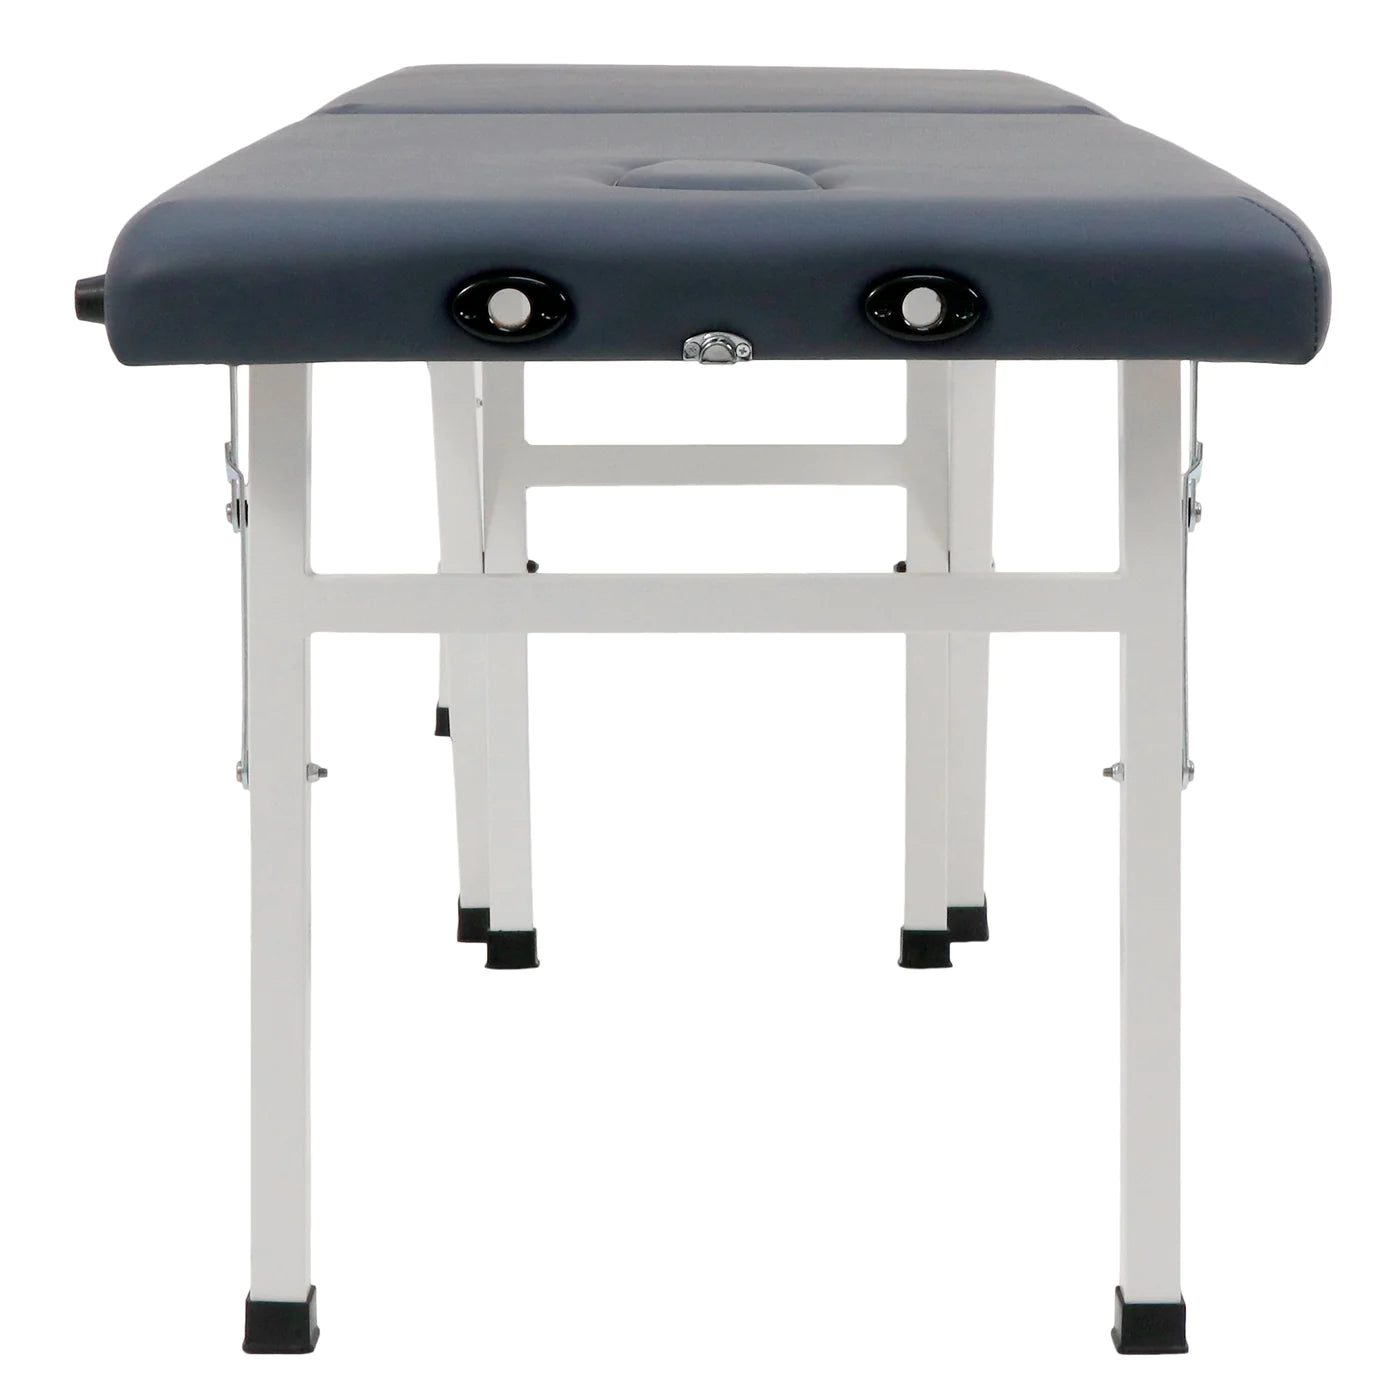 SPABODEGA 25" Harmon Economic Portable Massage Table, Royal Blue